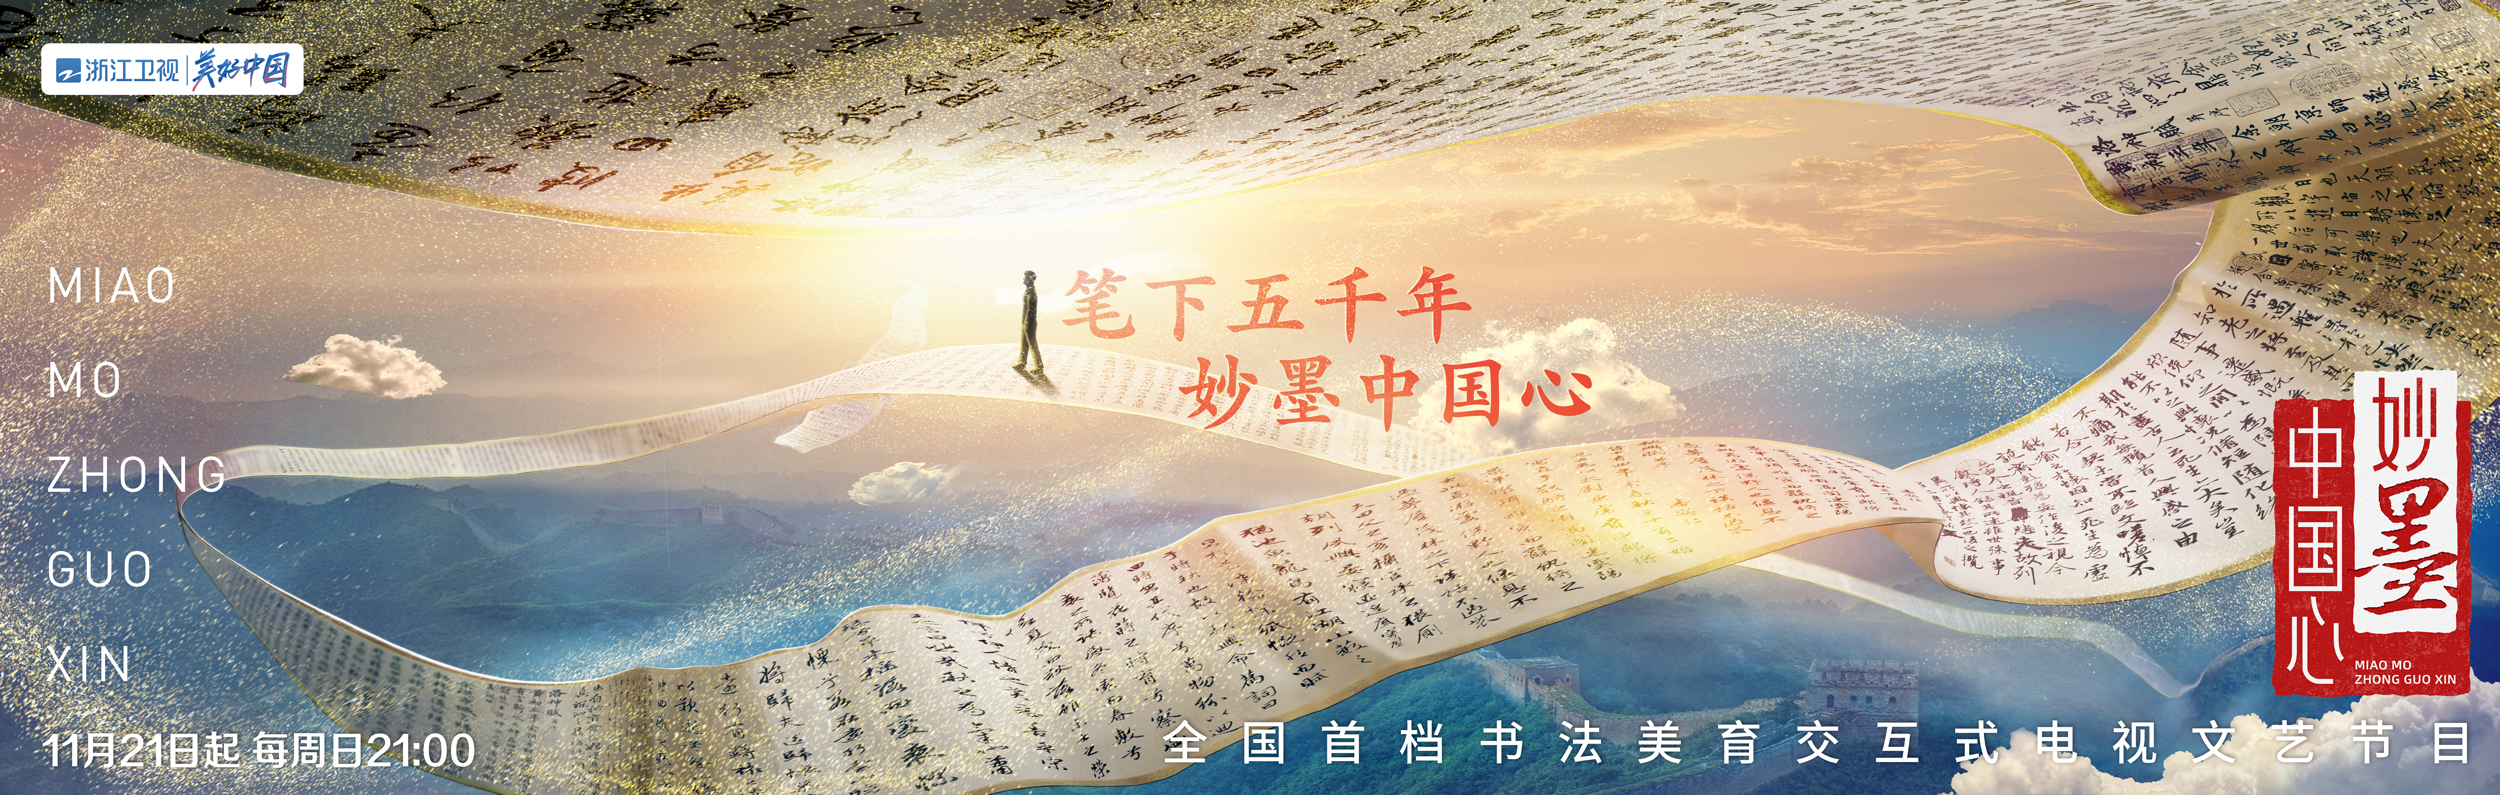 天悦平台首页探寻书法背后的千年文化 《妙墨中国心》11月21日开播